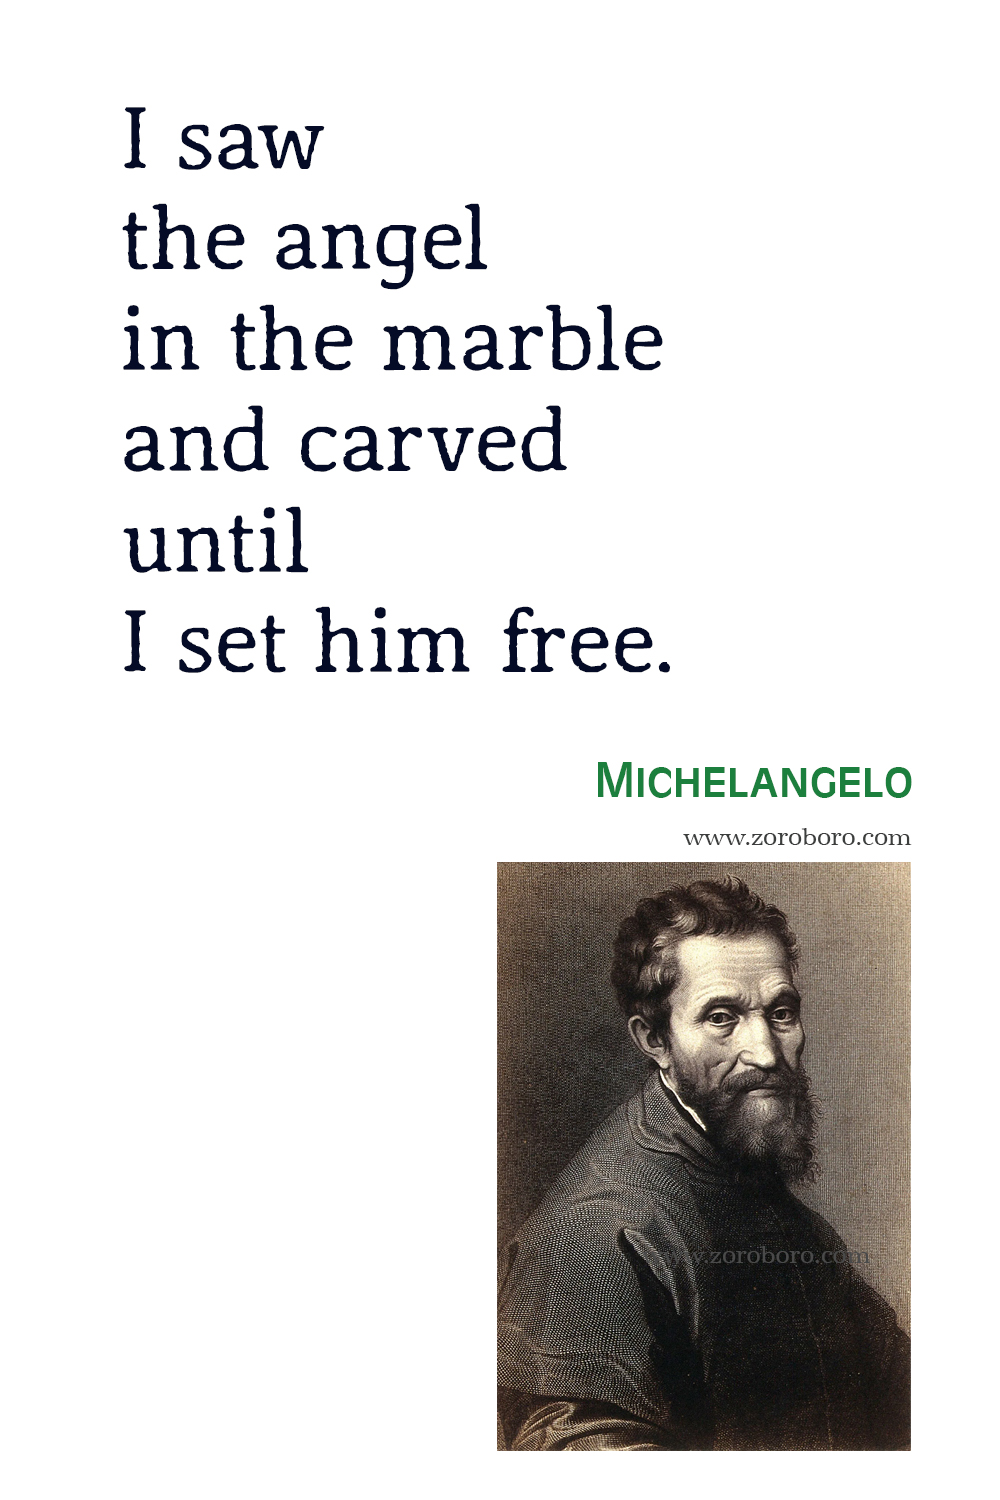 Michelangelo Quotes, Michelangelo Art, Michelangelo Inspirational, Michelangelo Painting, Michelangelo Perfection, Michelangelo Quotes.